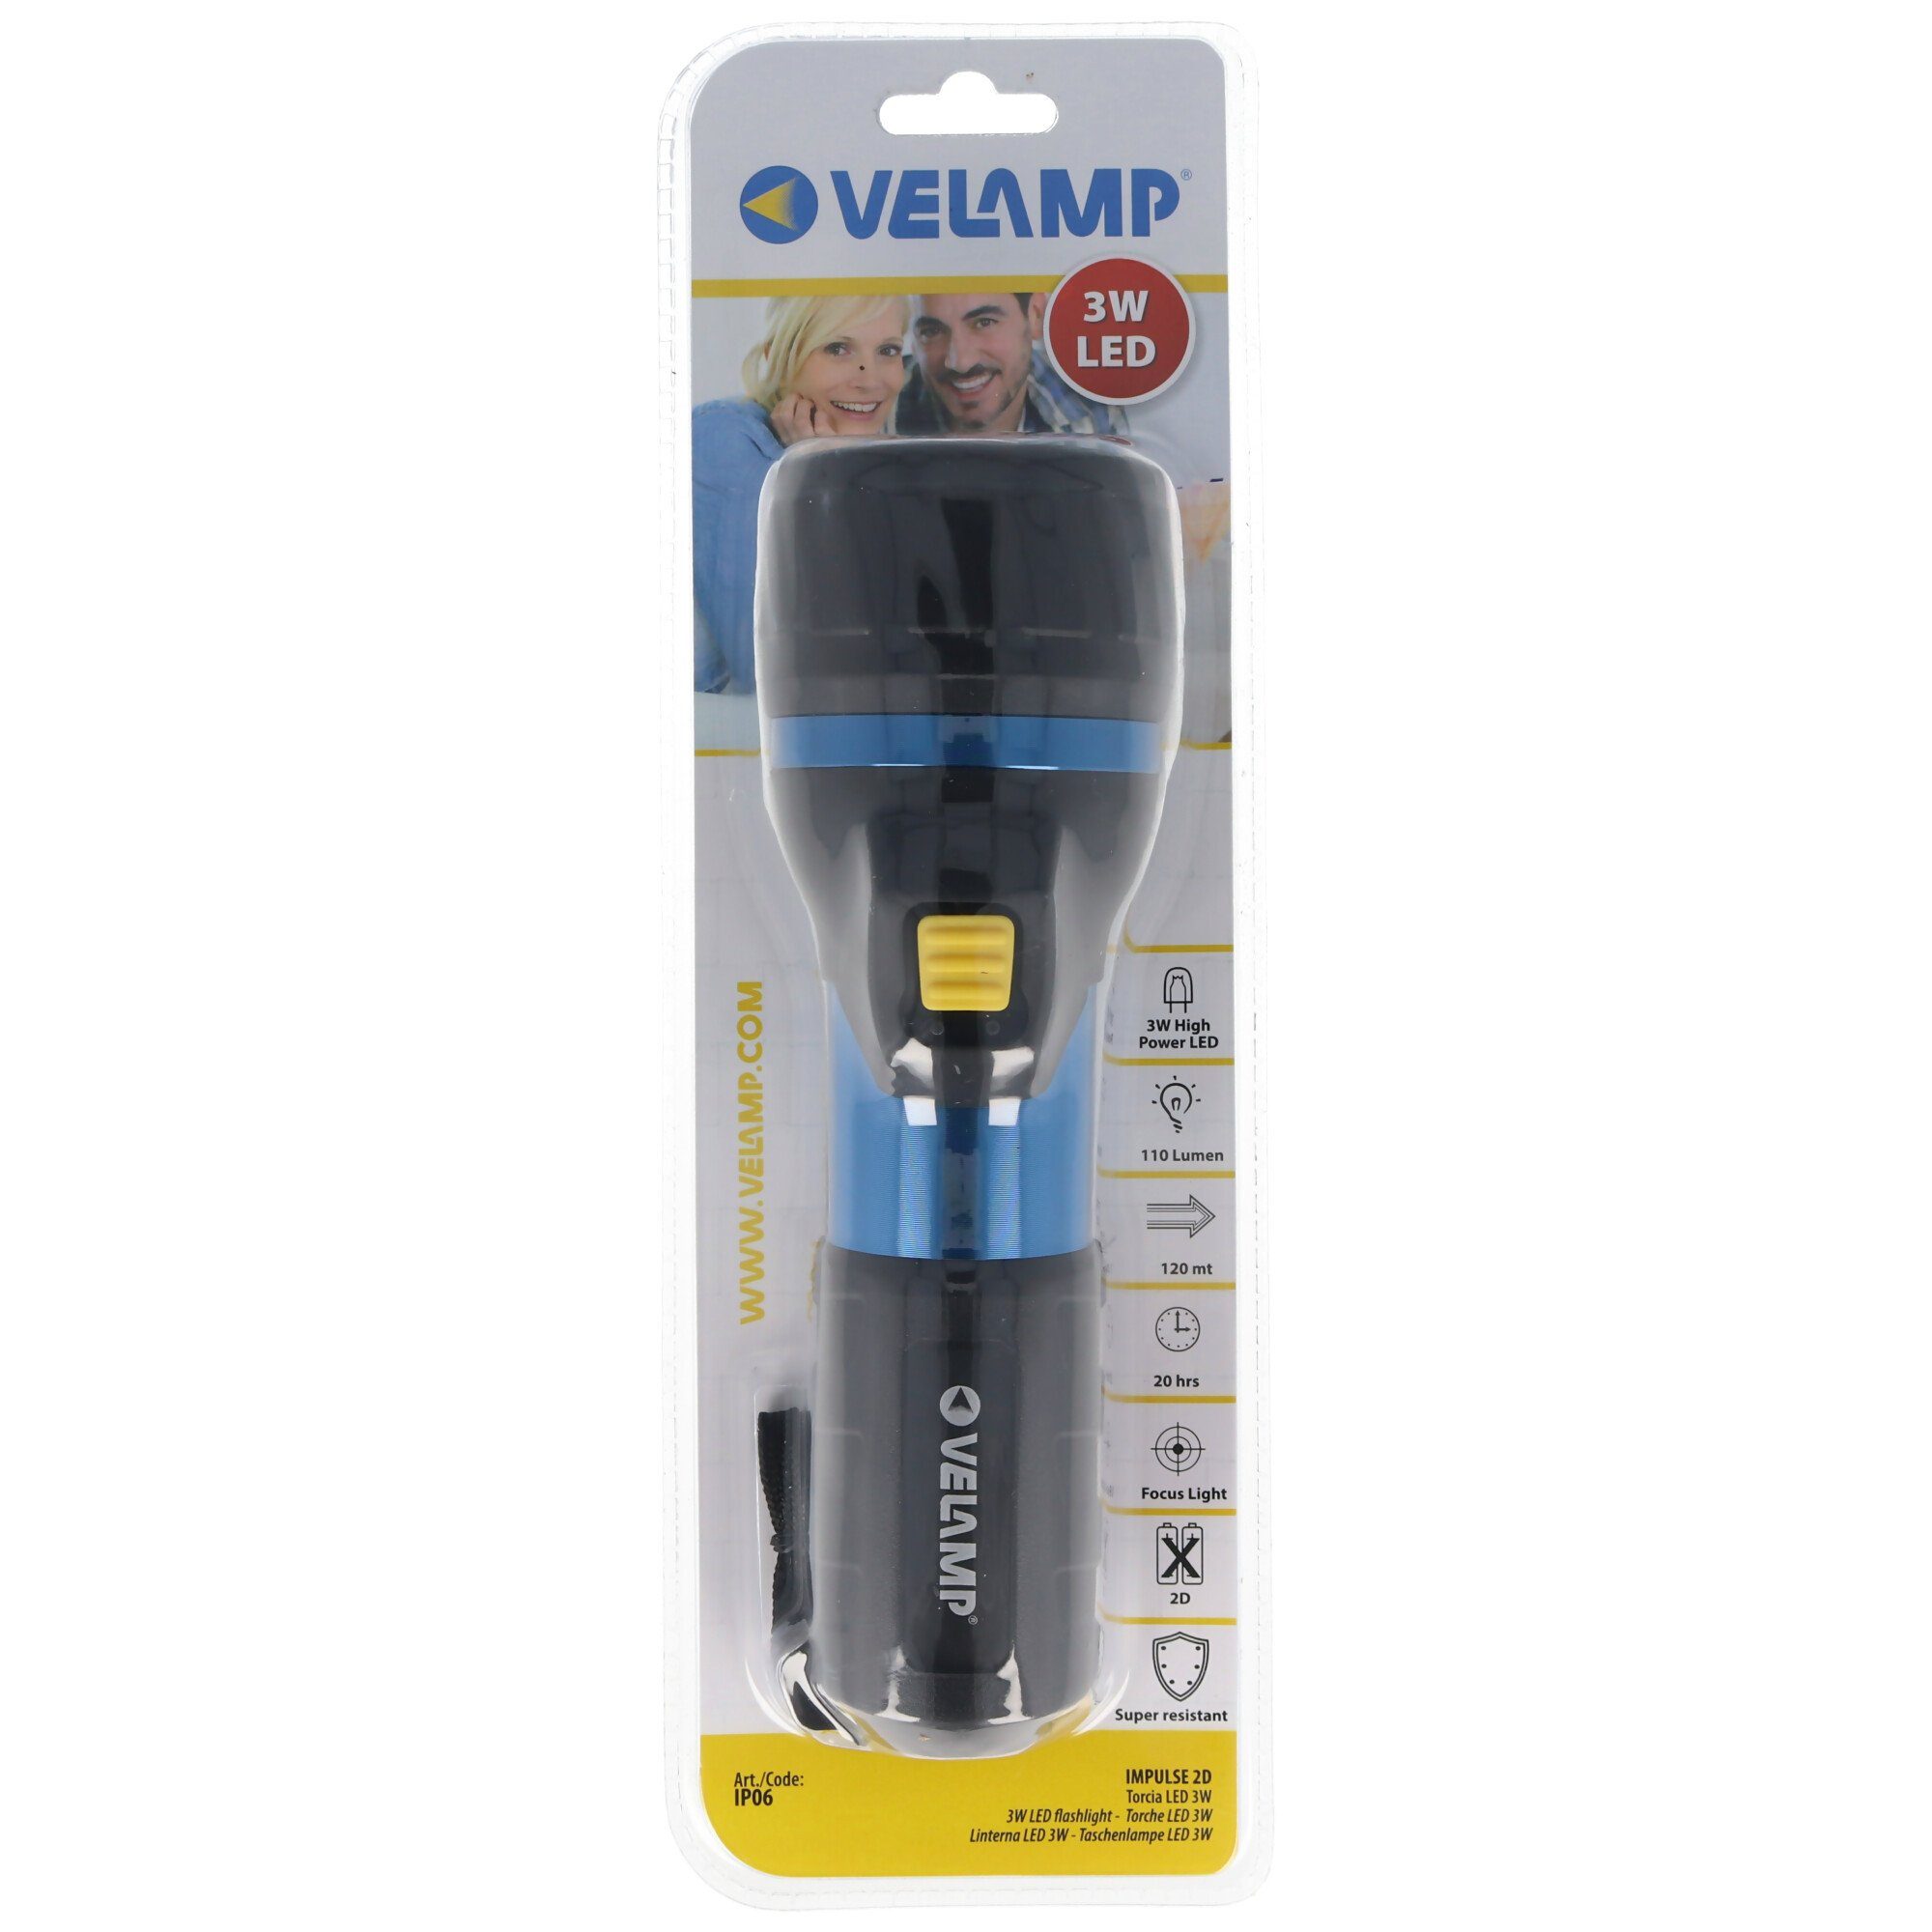 Velamp Lumen, und High LED-Taschenlampe stoßfe Taschenlampe LED Power LED mit 110 3W, wasser-